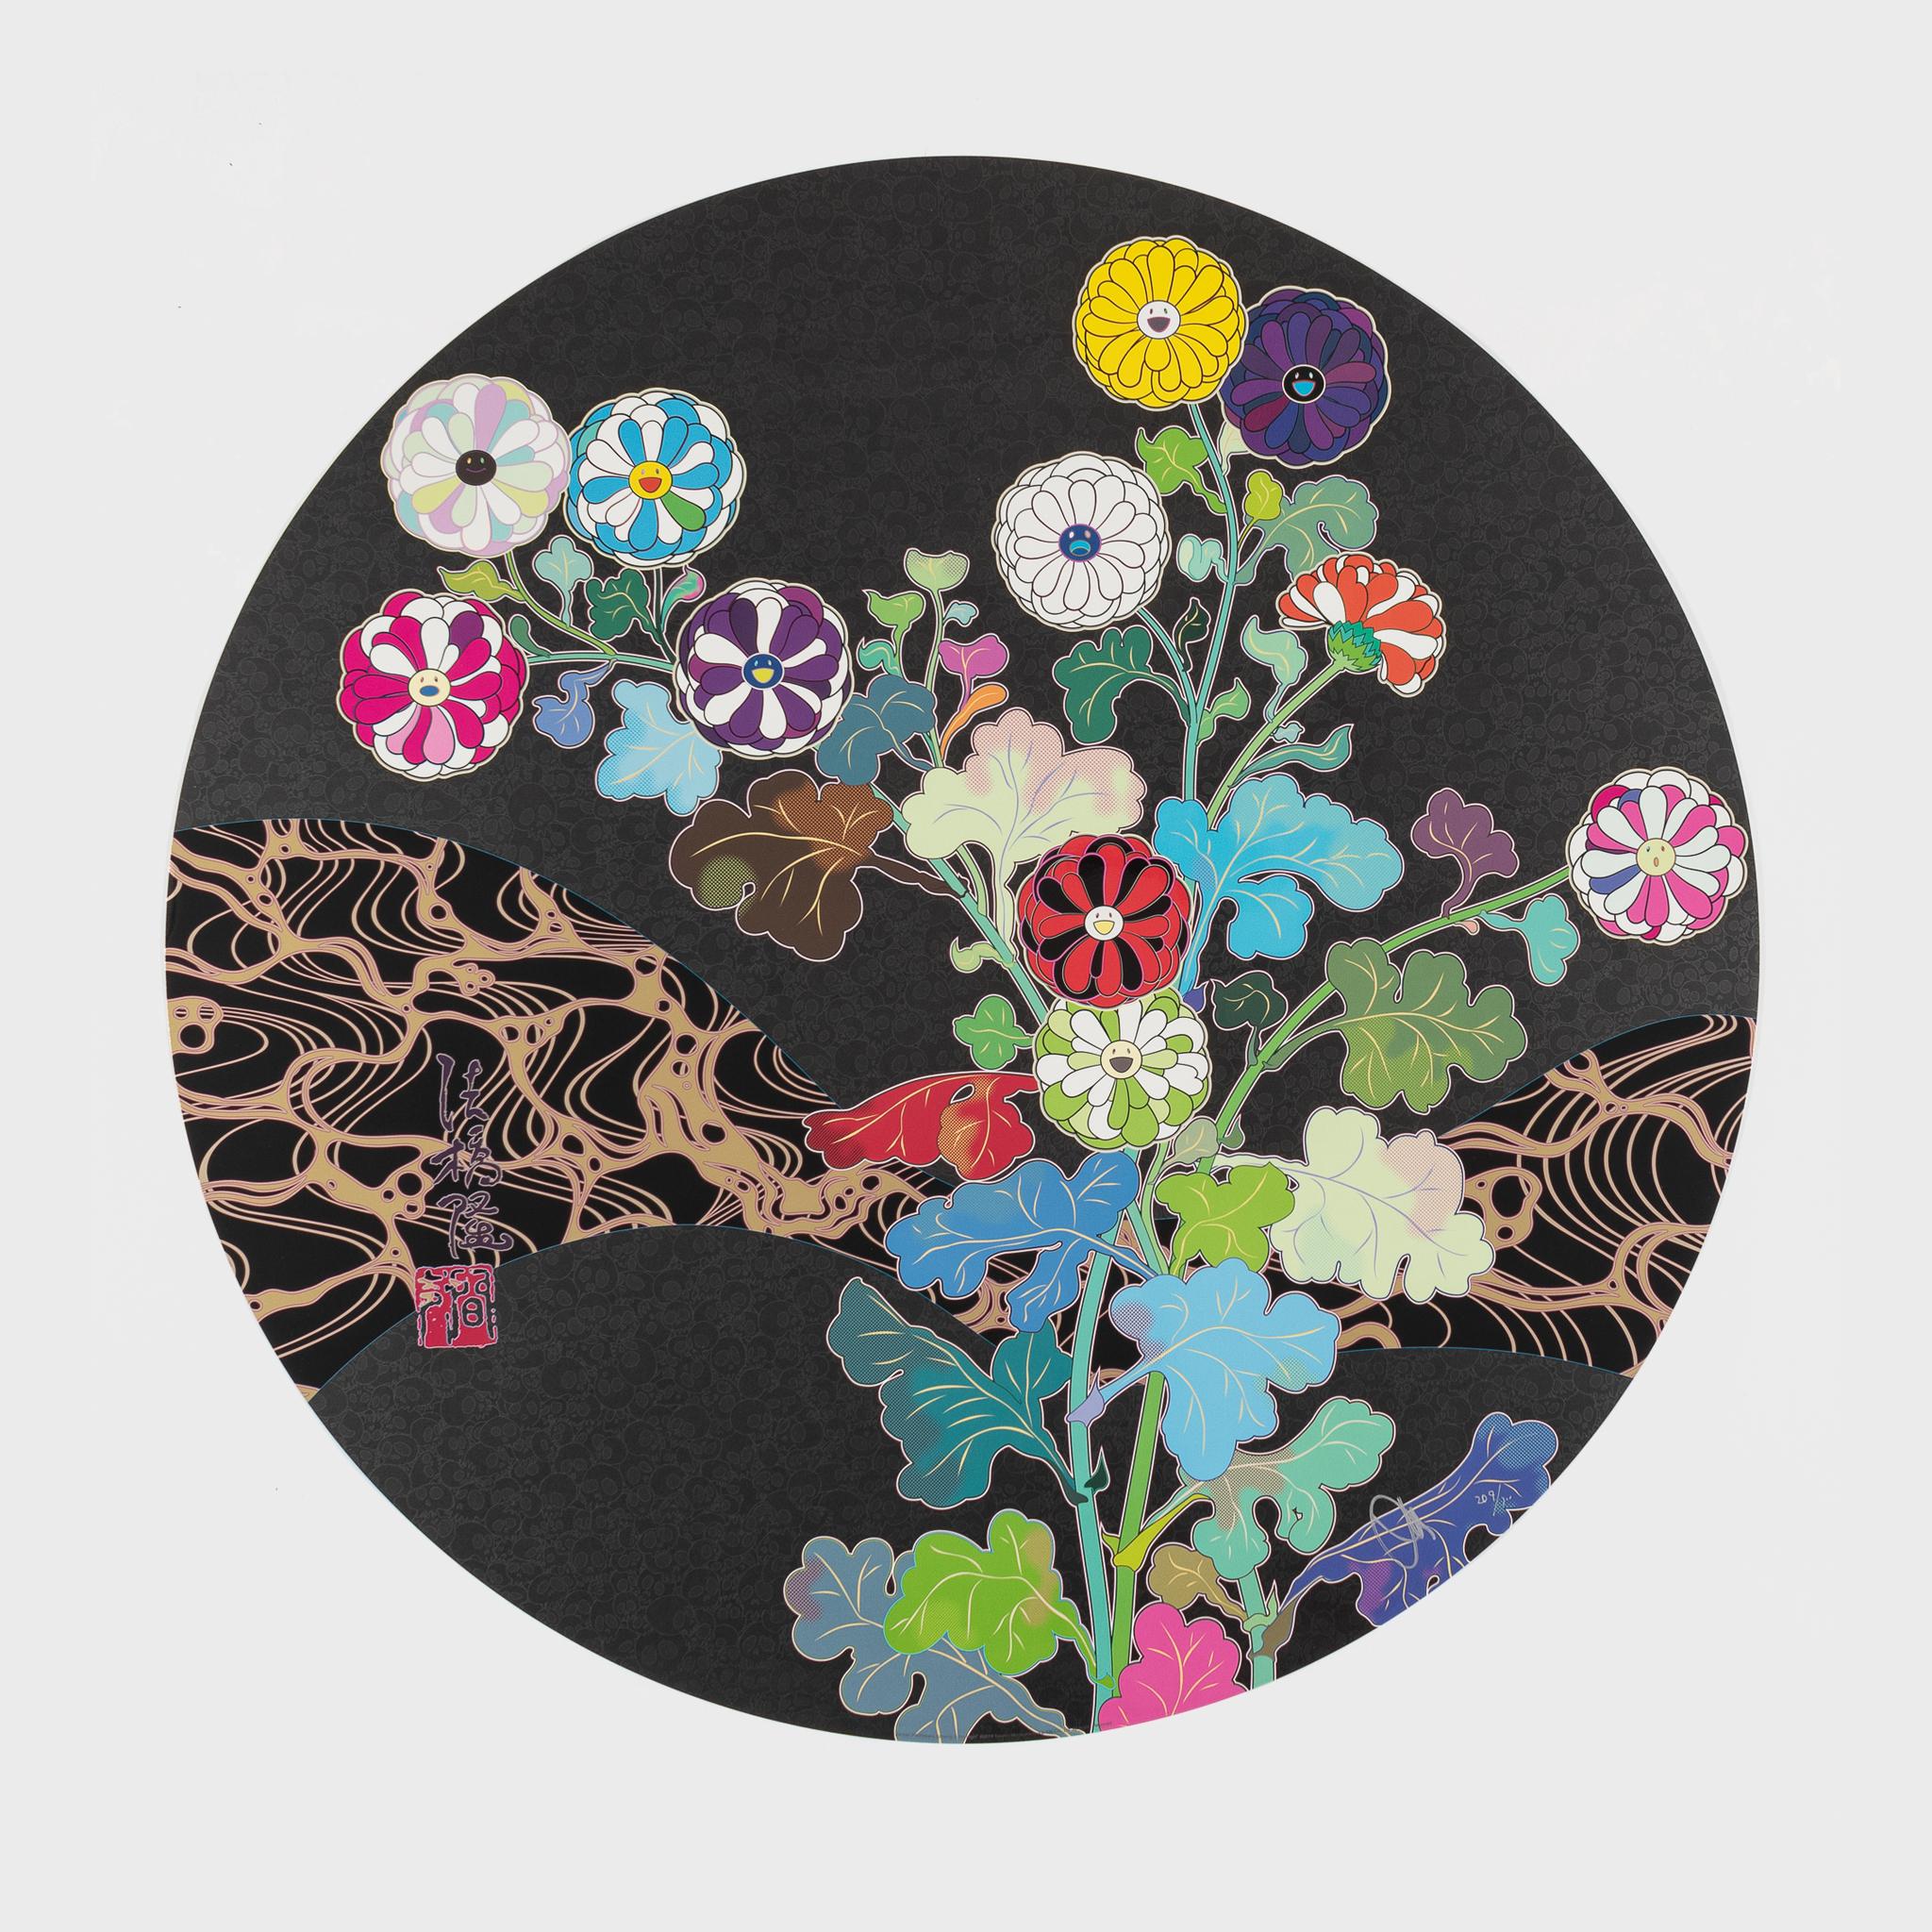 Takashi Murakami Abstract Print - Kansei: Wildflowers Glowing in the Night